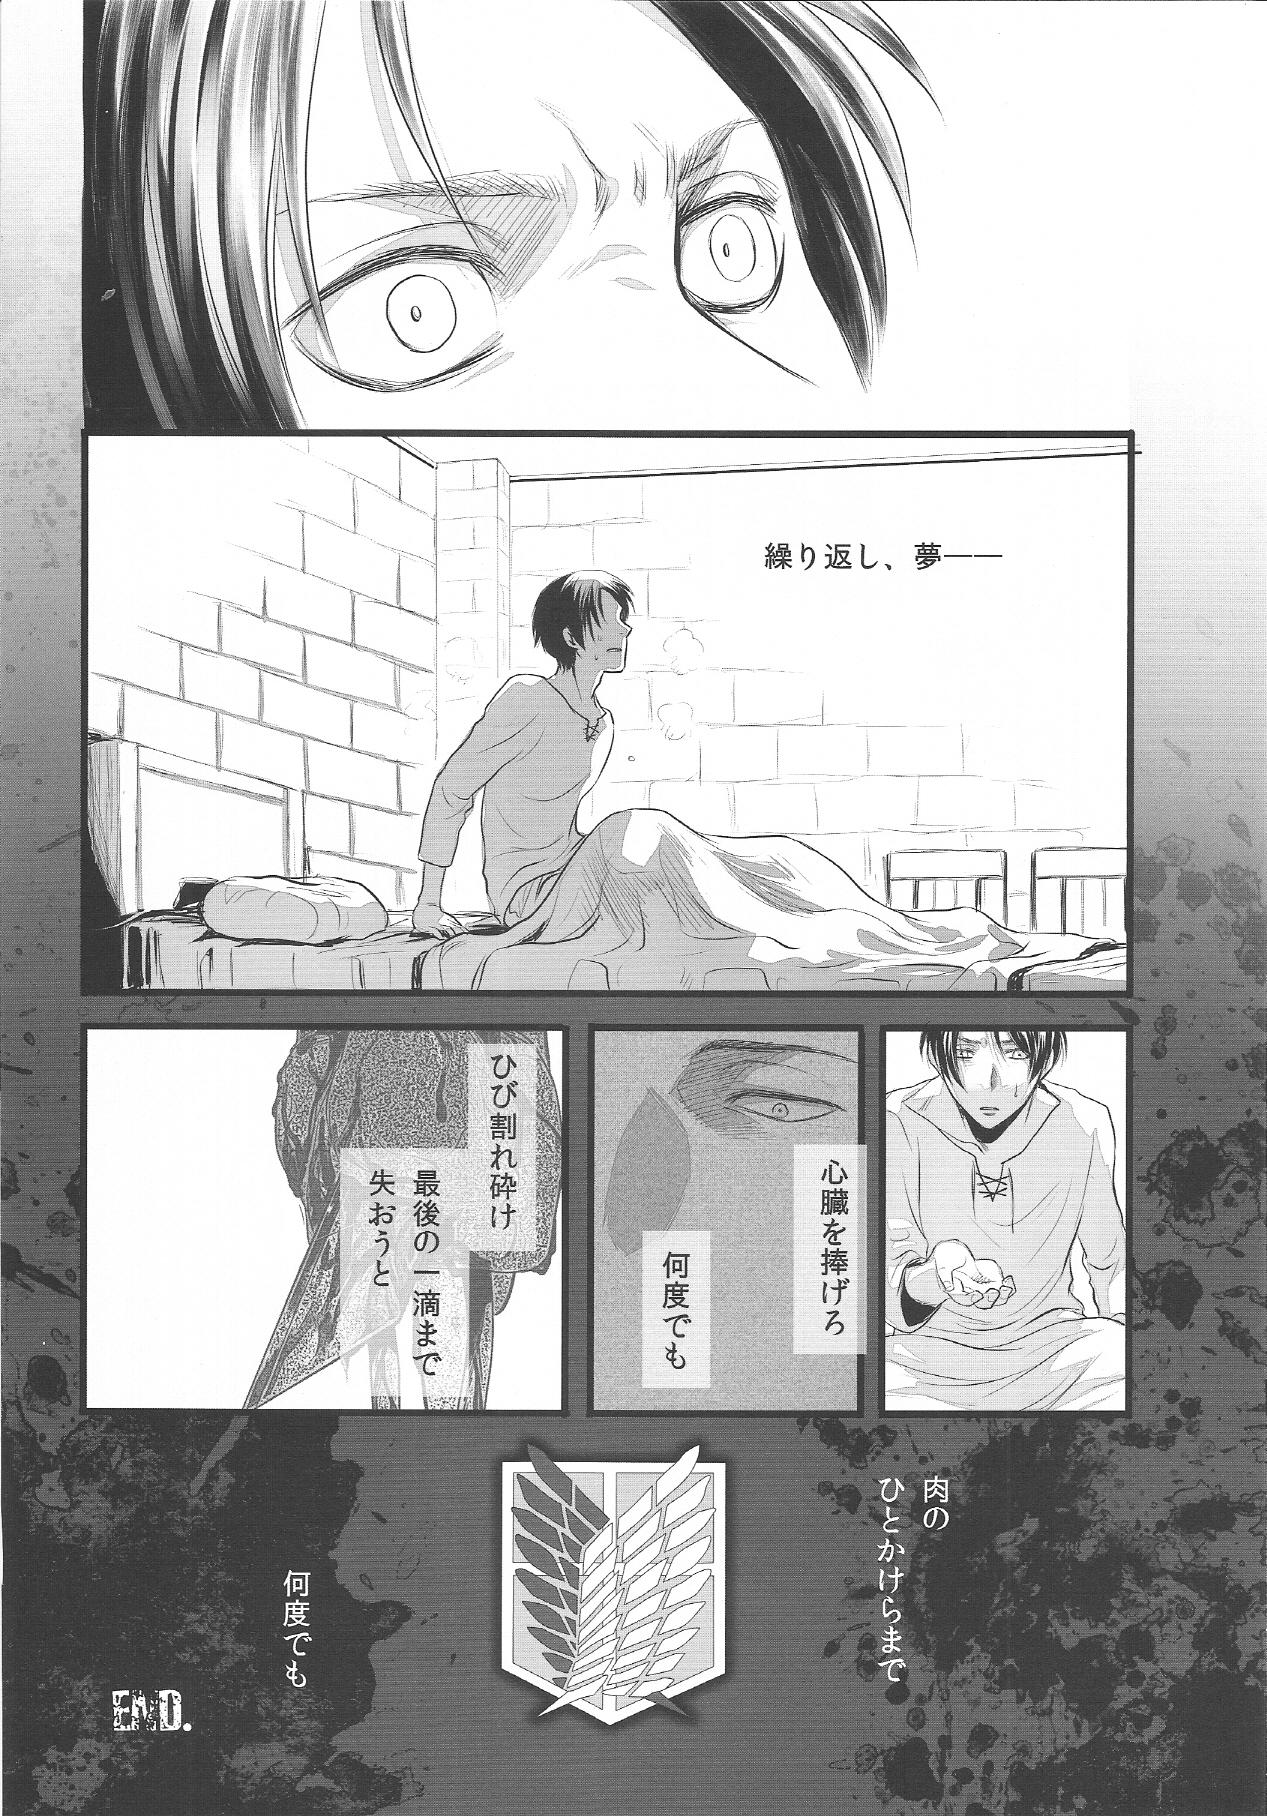 Toes EreBoko - Shingeki no kyojin Hooker - Page 7